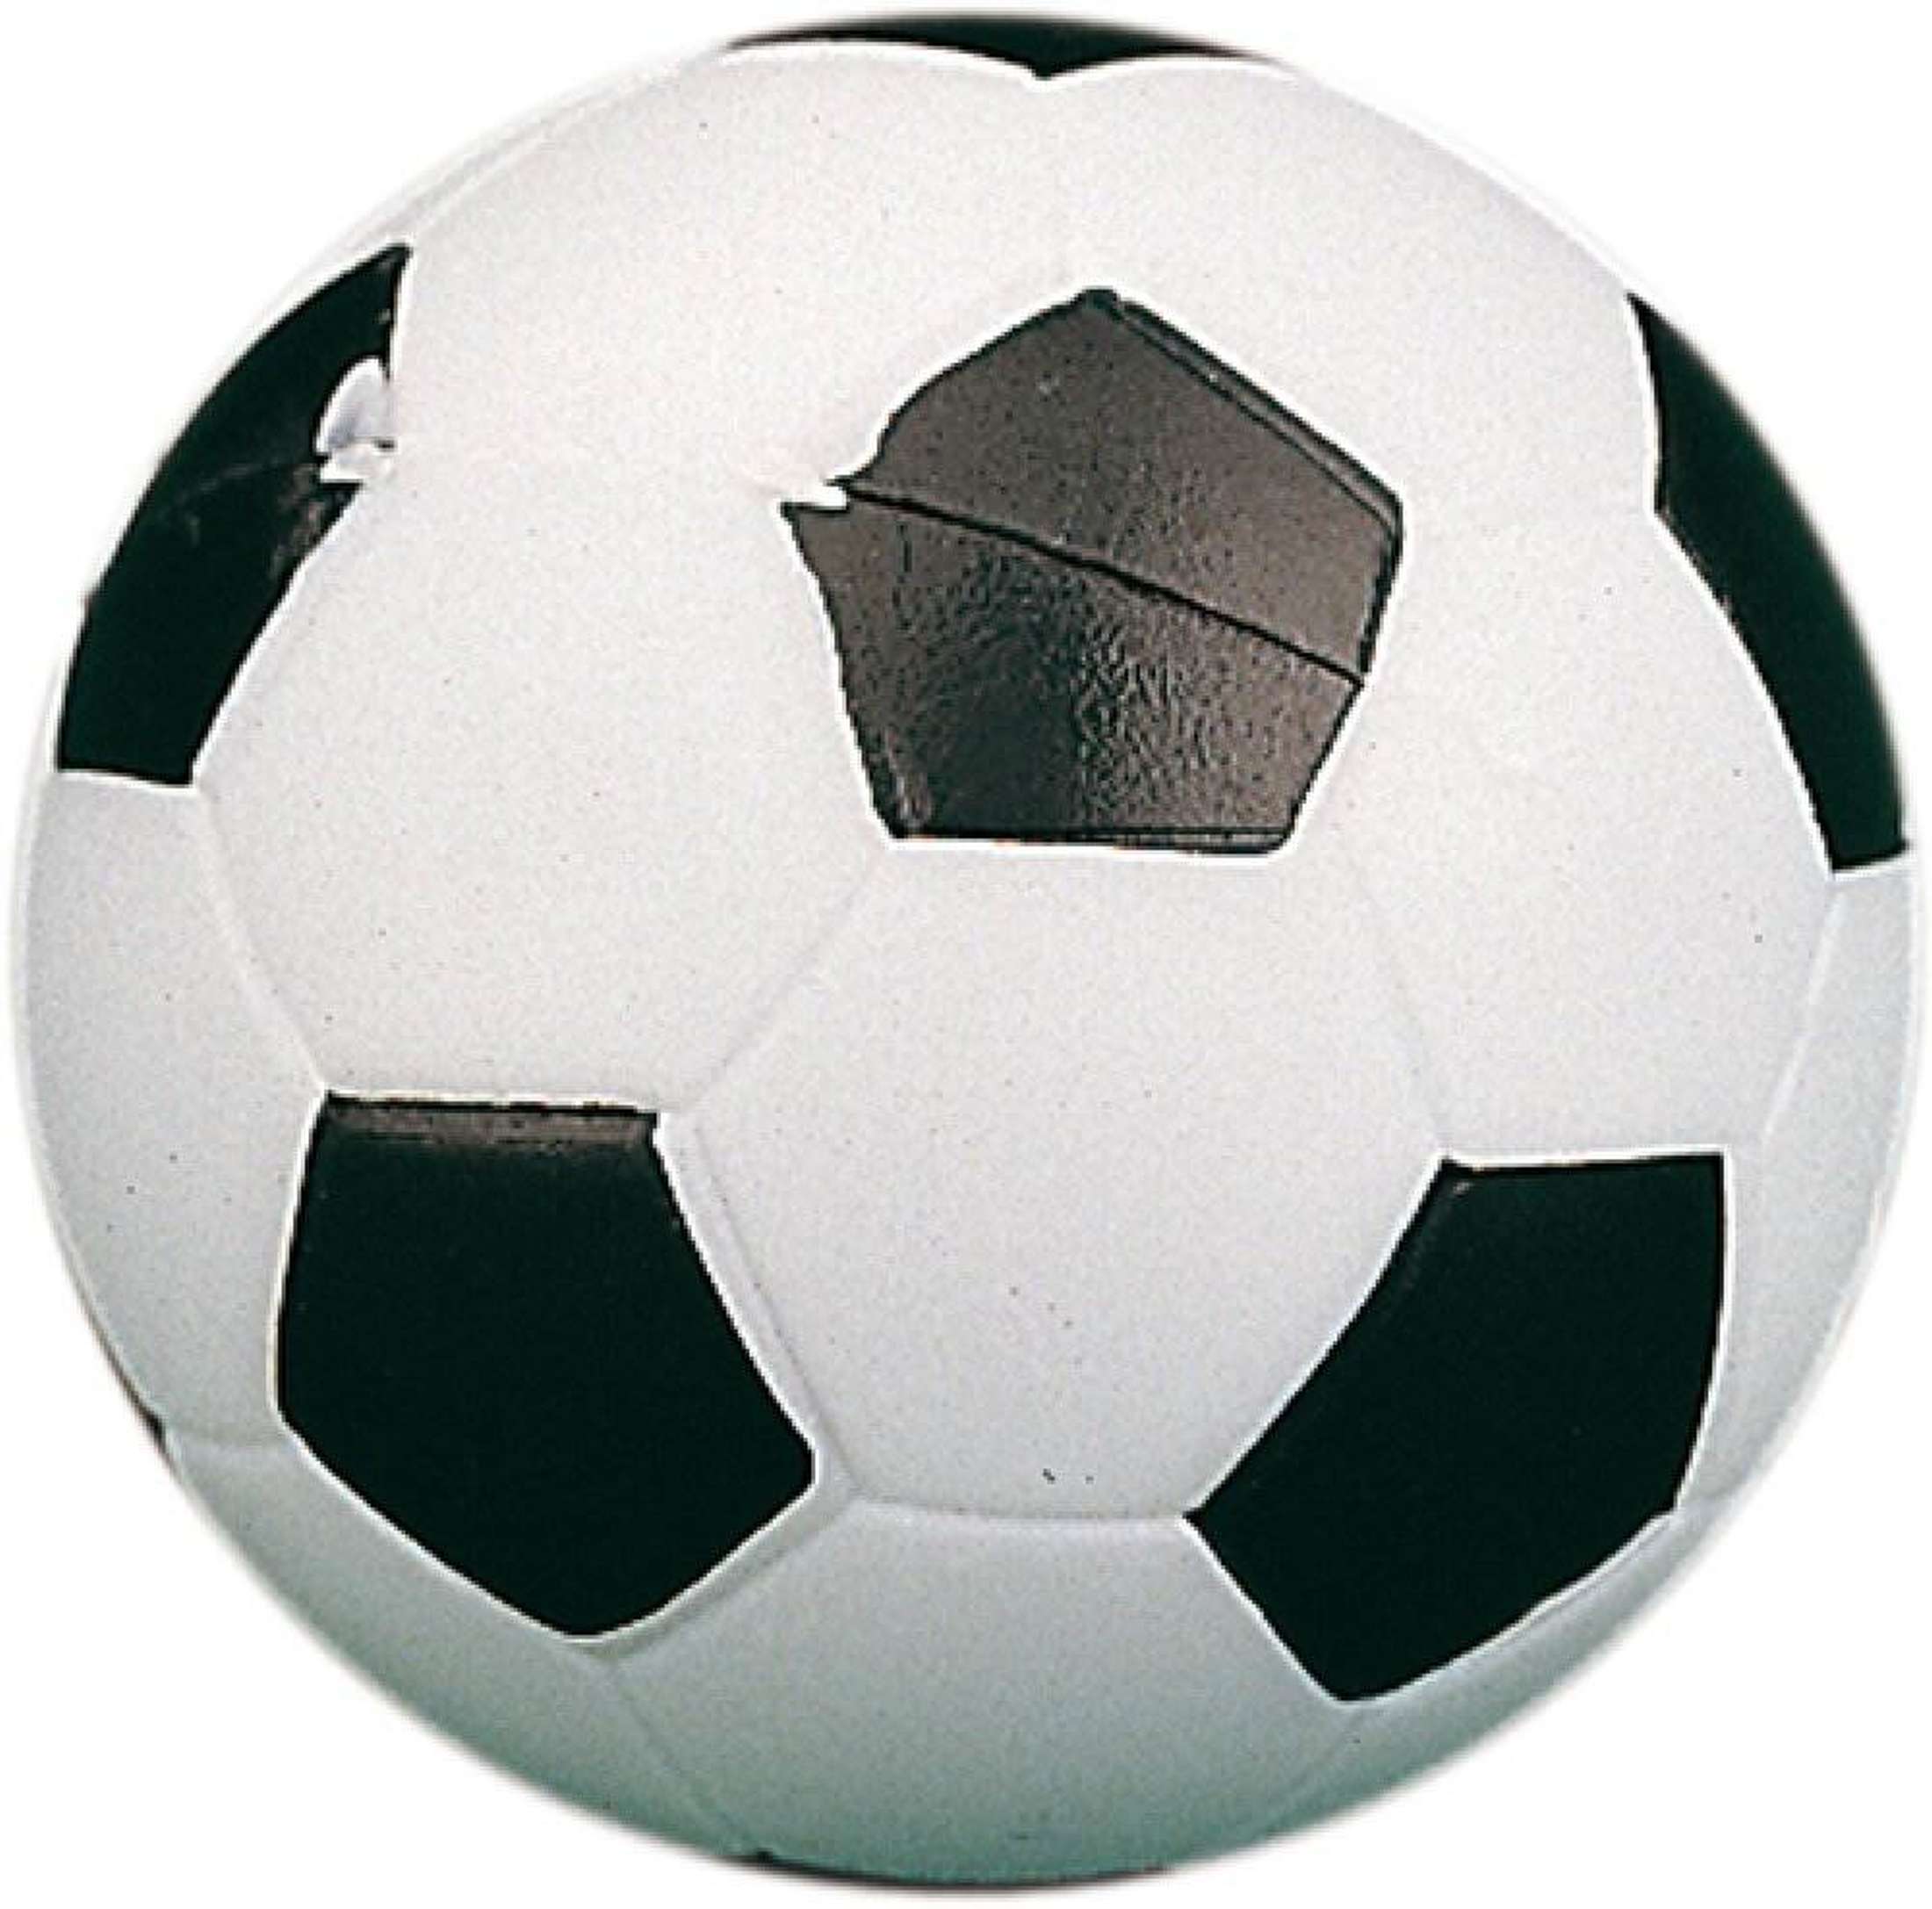 Soccer ball black/white-1